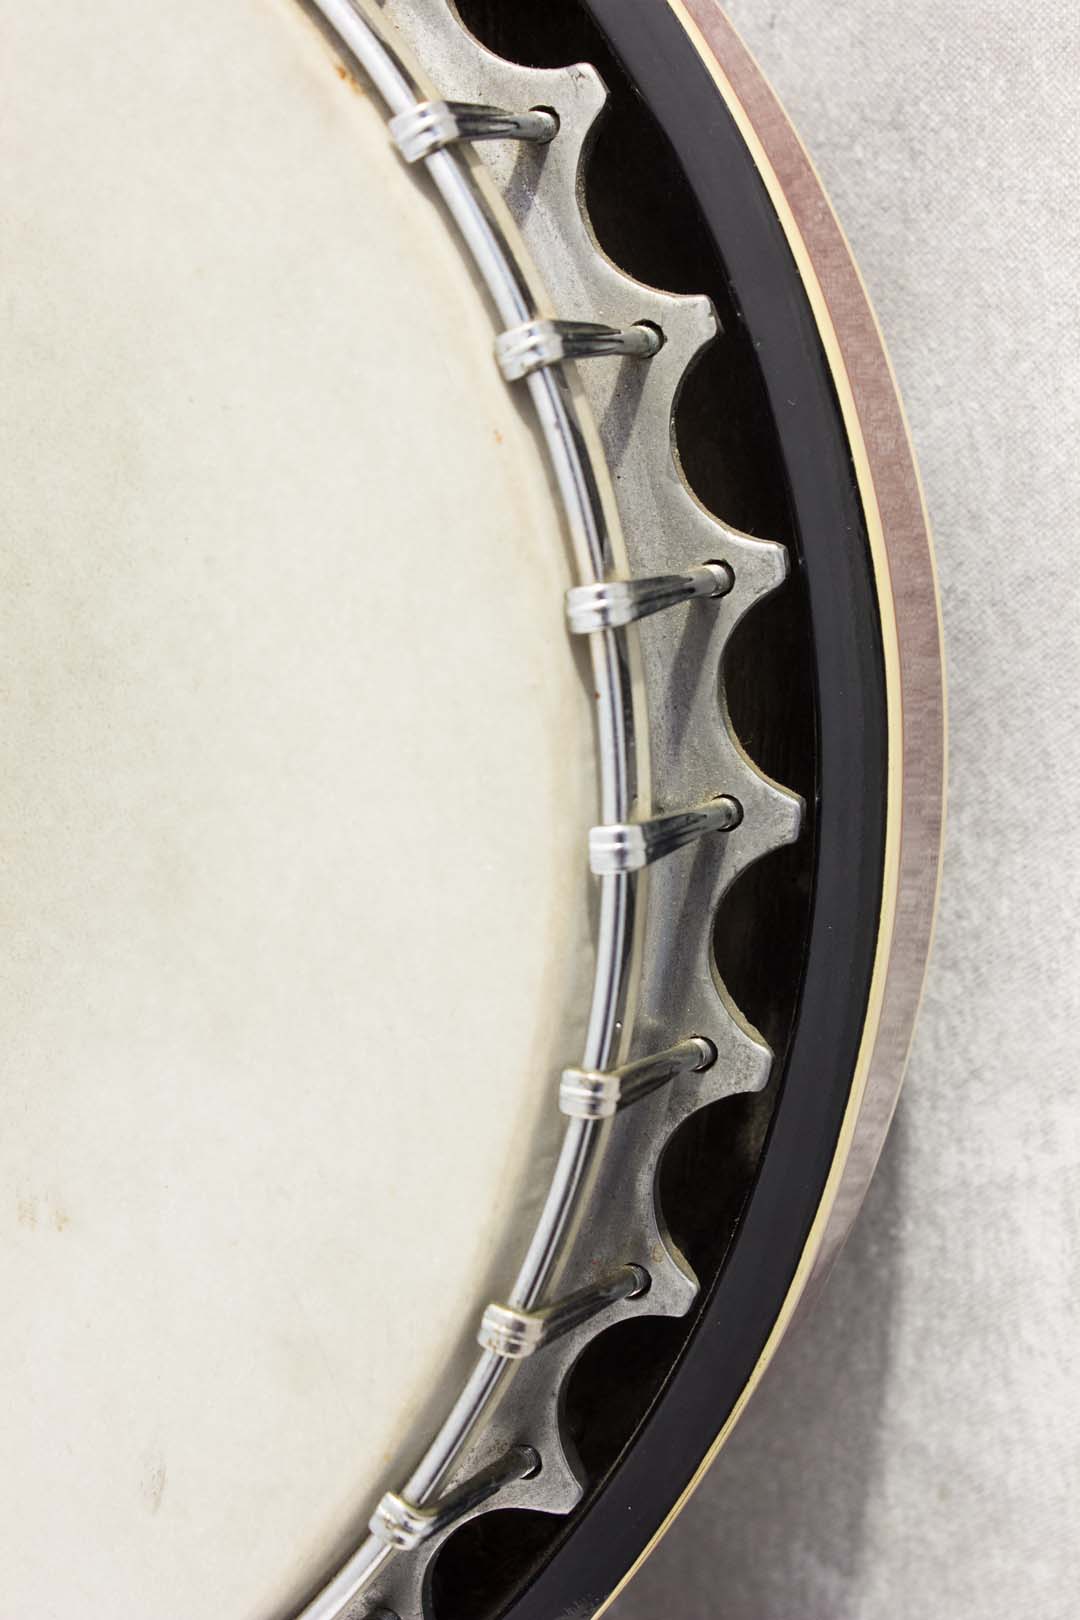 Hondo 5-string banjo c1977